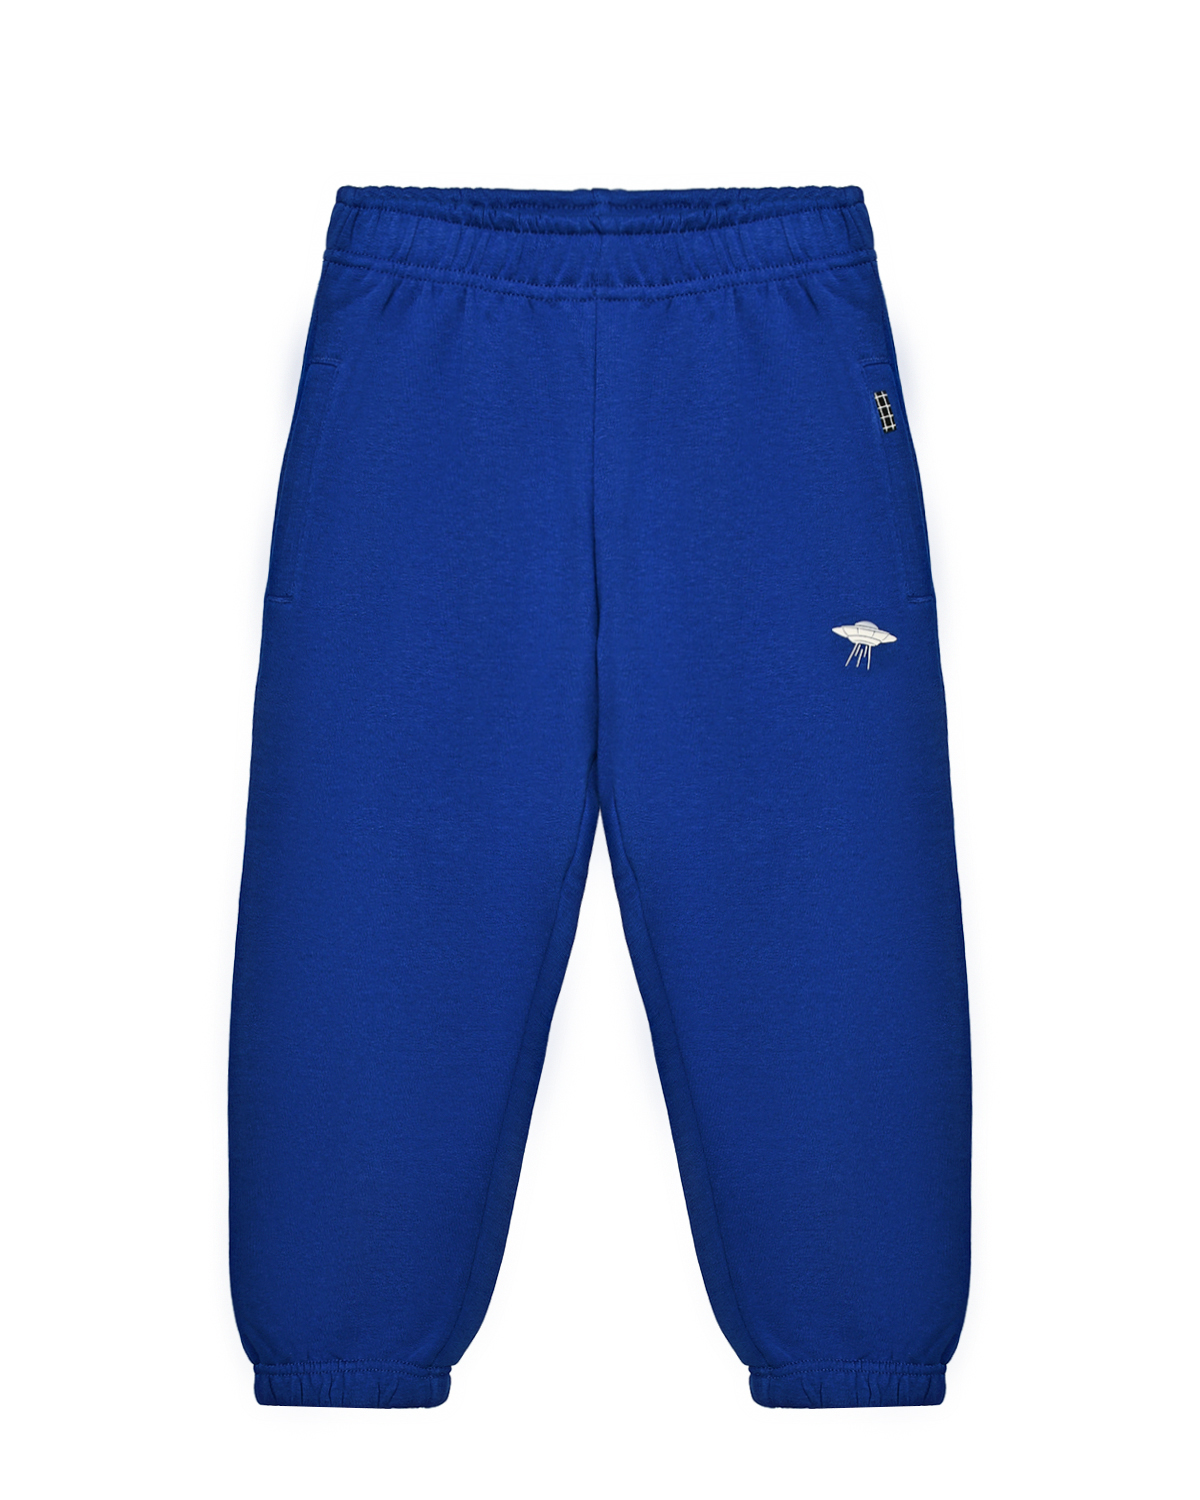 Спортивные брюки Adan Reef Blue Molo, размер 110, цвет синий - фото 1